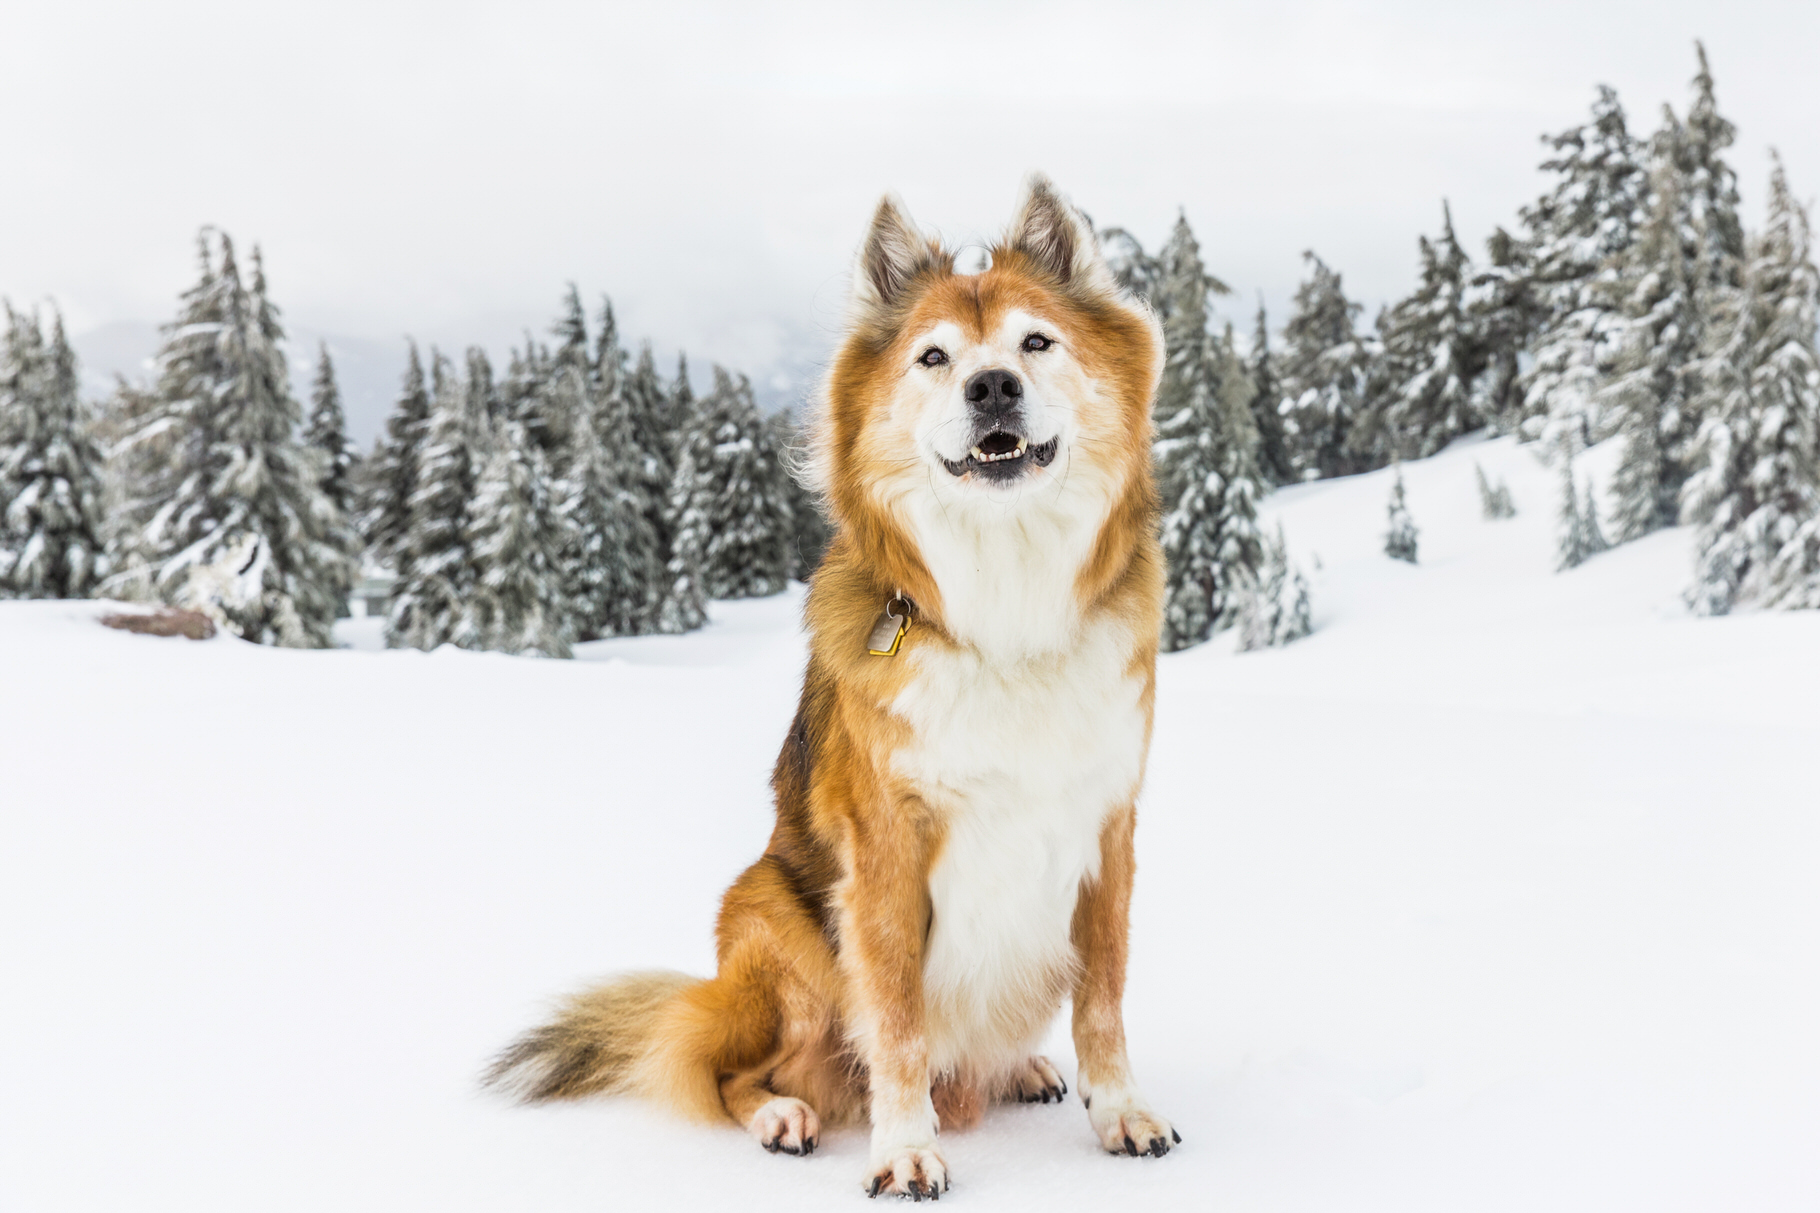 Mt. Hood Snow Dog Photos